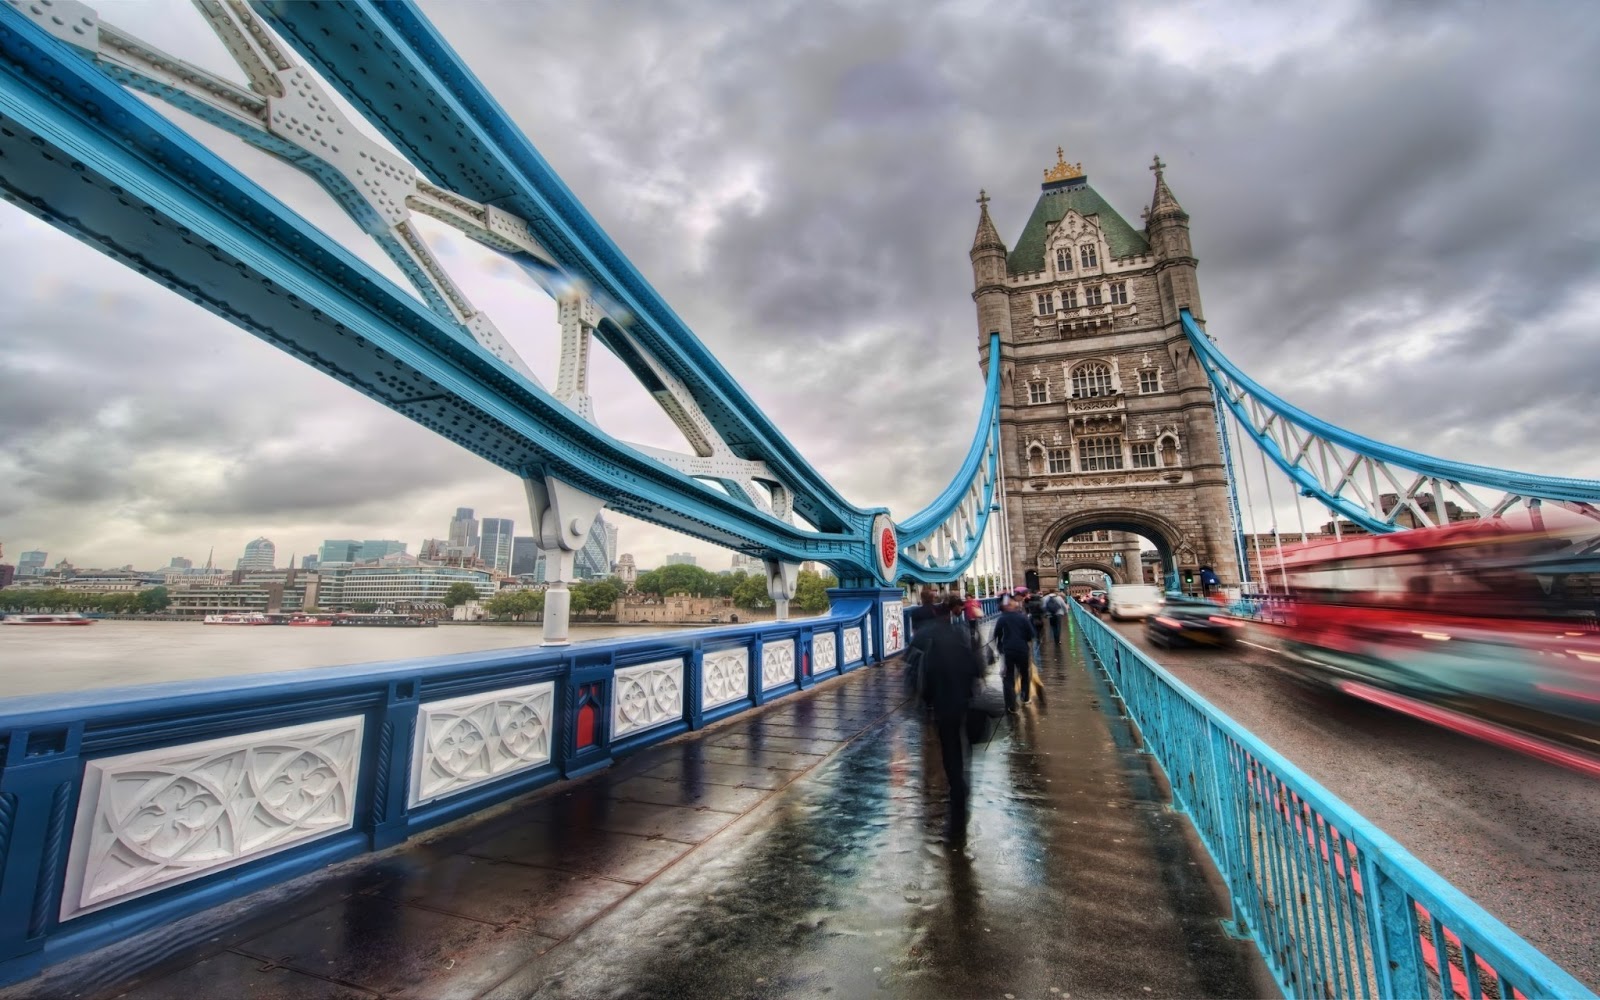 ロンドン橋の壁紙,ブリッジ,首都圏,スカイウェイ,吊り橋,建築